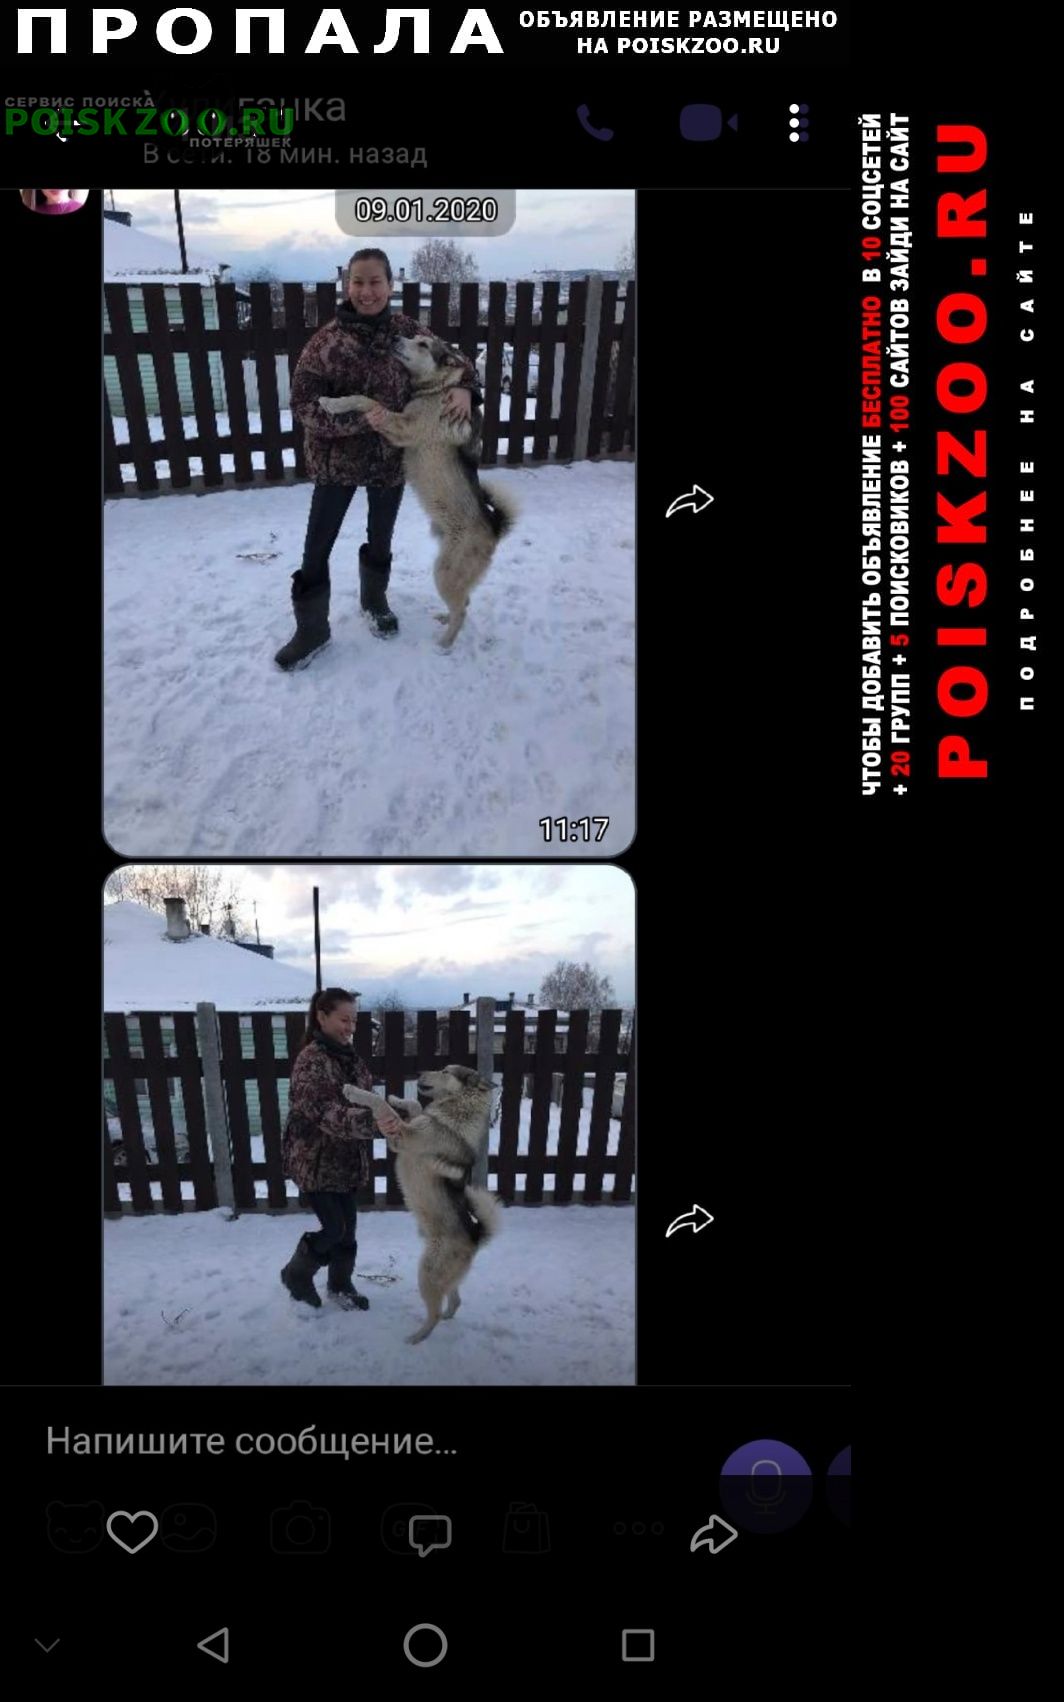 Пропала собака кобель украдена Красноярск